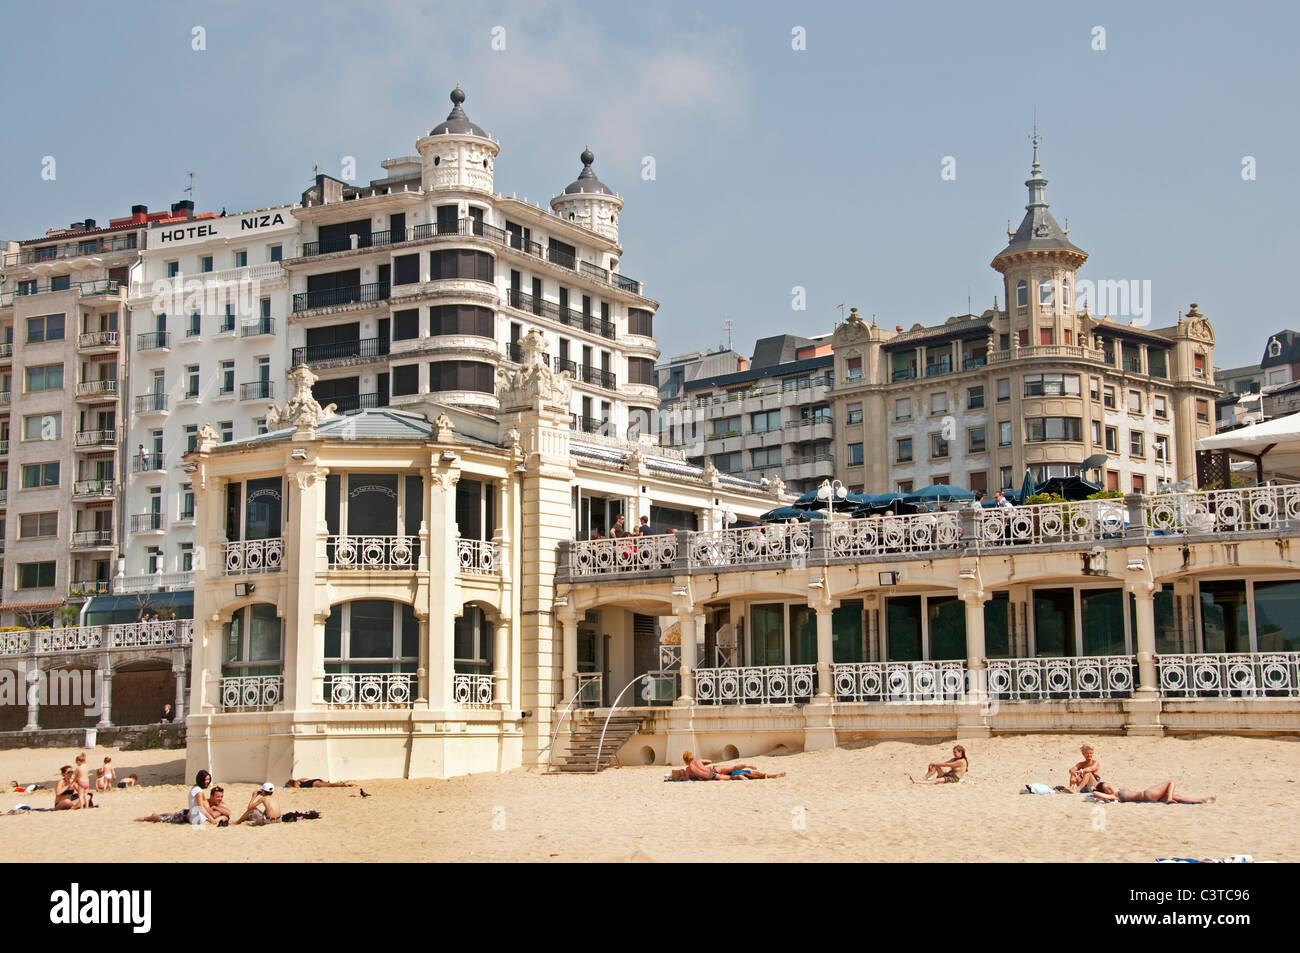 Playa de la Concha, San Sebastian Espagne Pays Basque plage sable Mer Banque D'Images